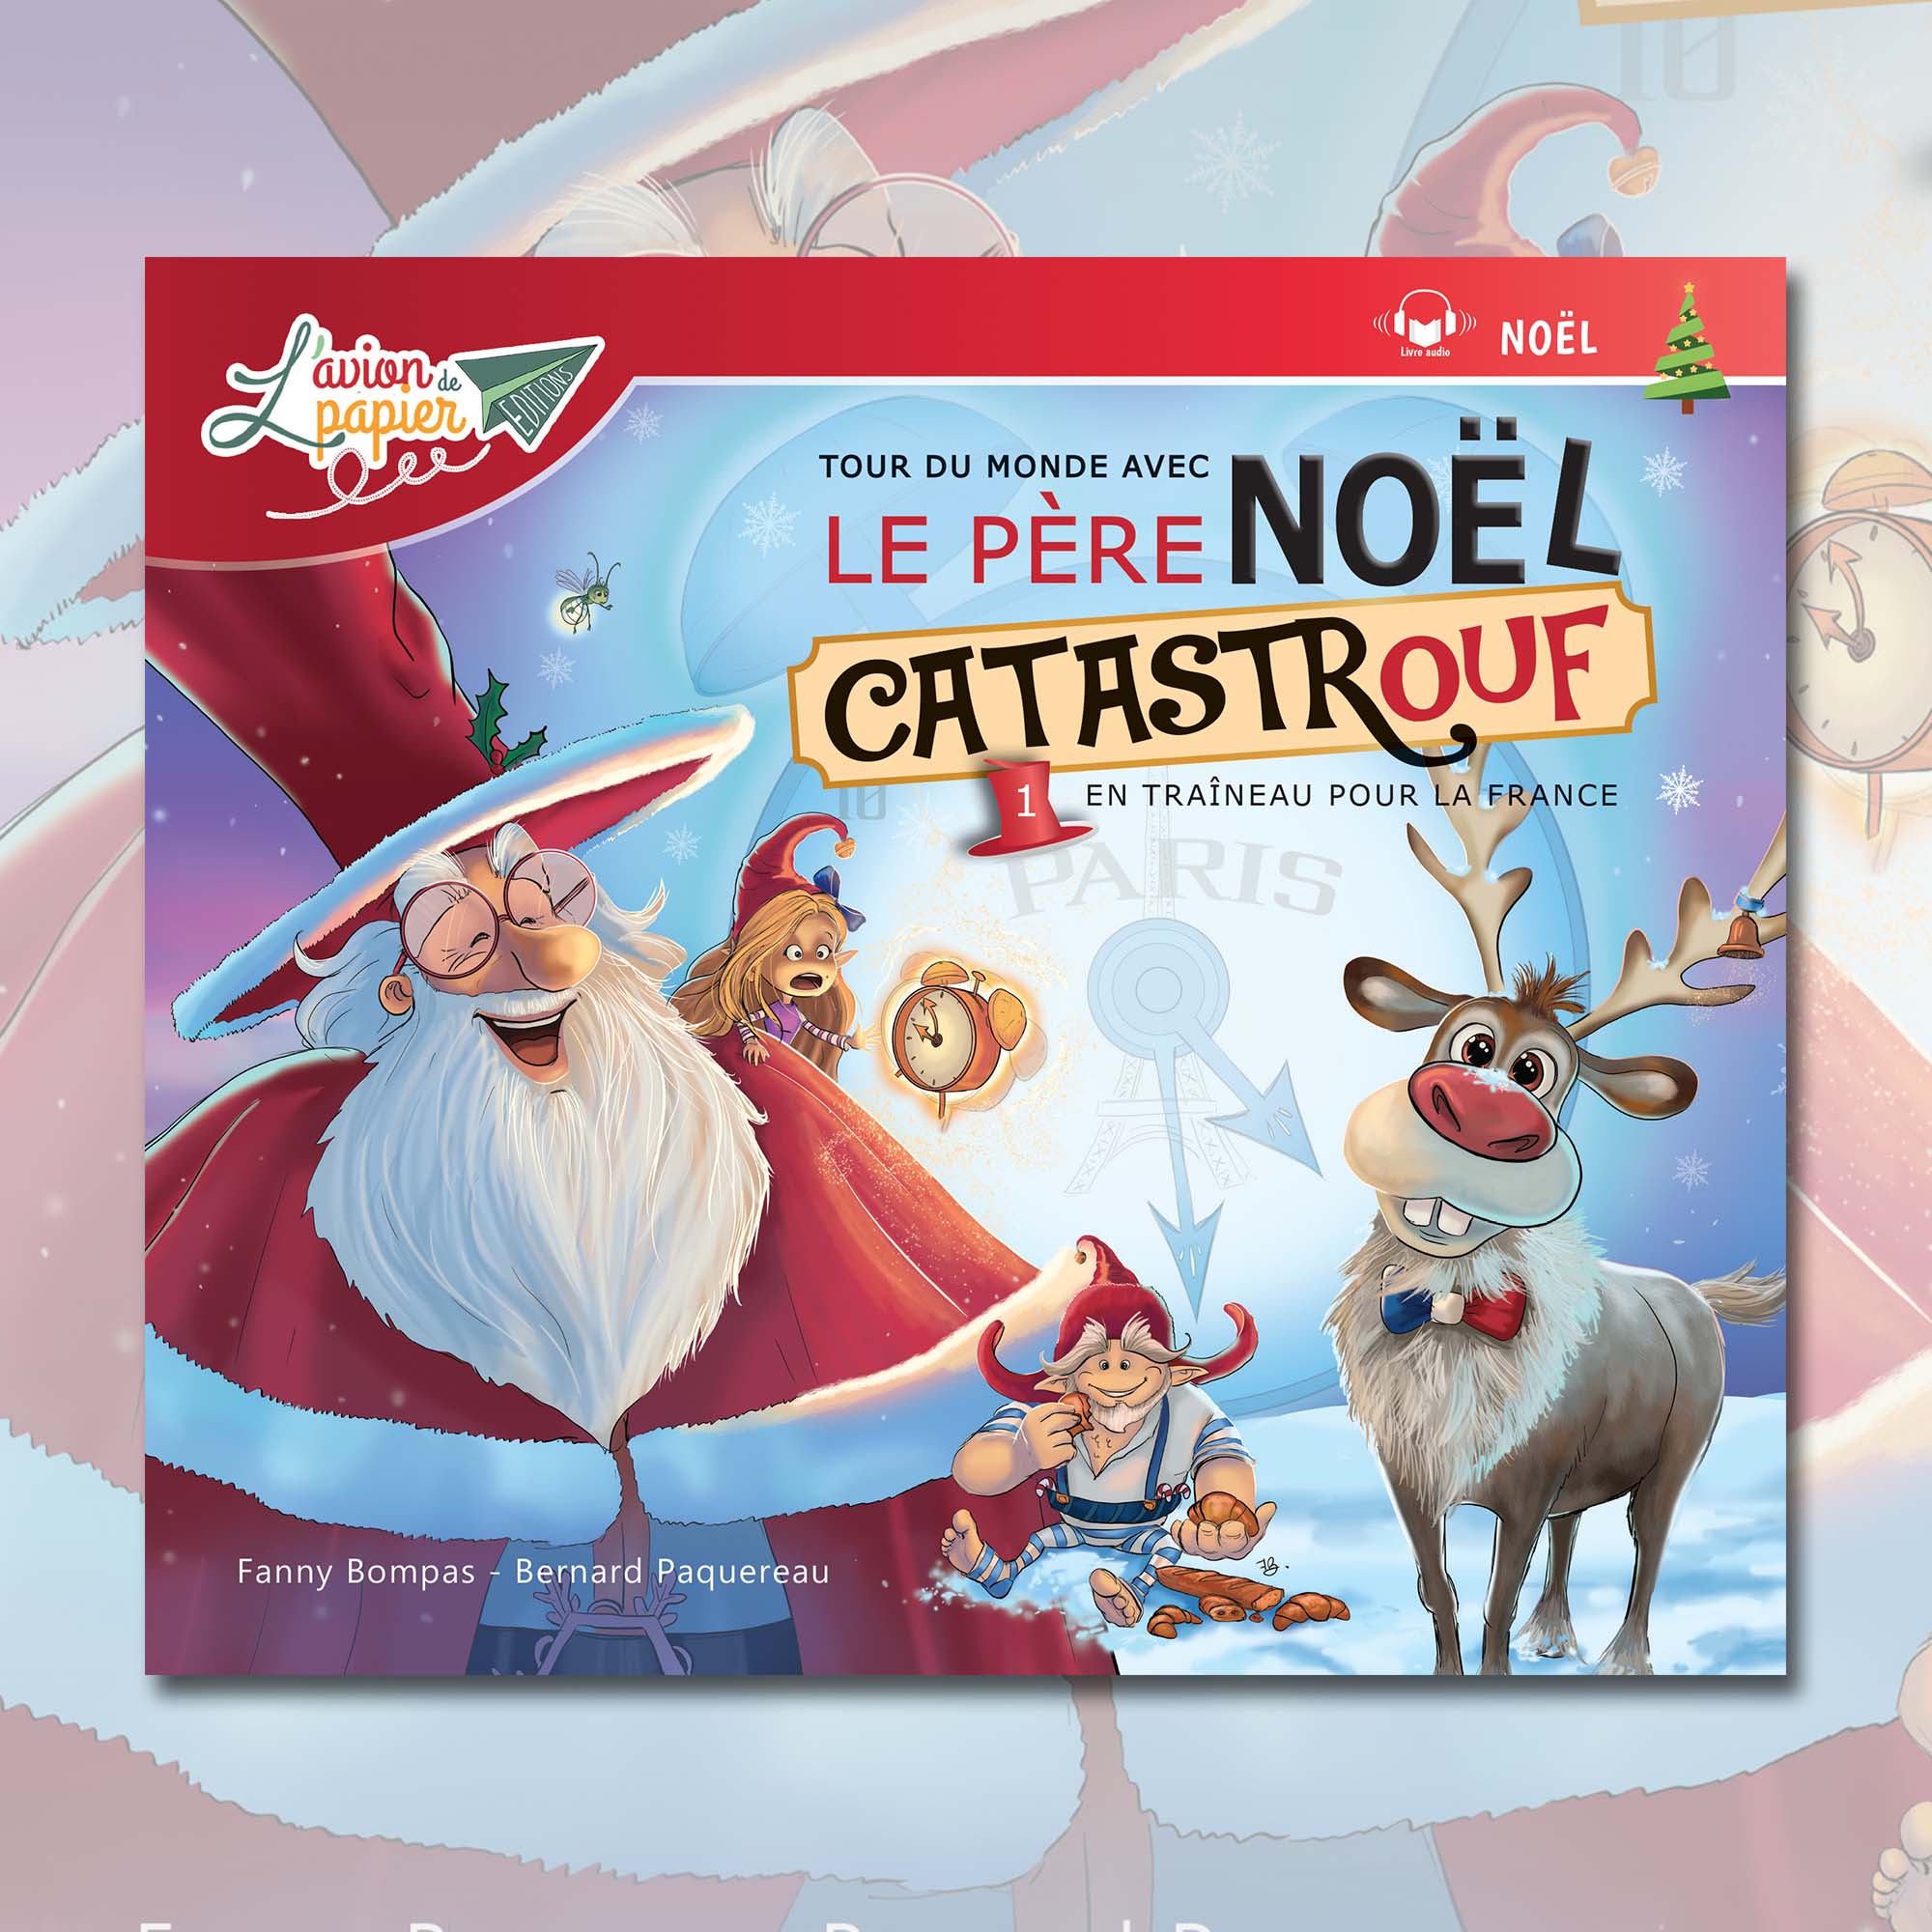 Tour du monde avec le Père Noël Catastrouf 1 - En traîneau pour la France